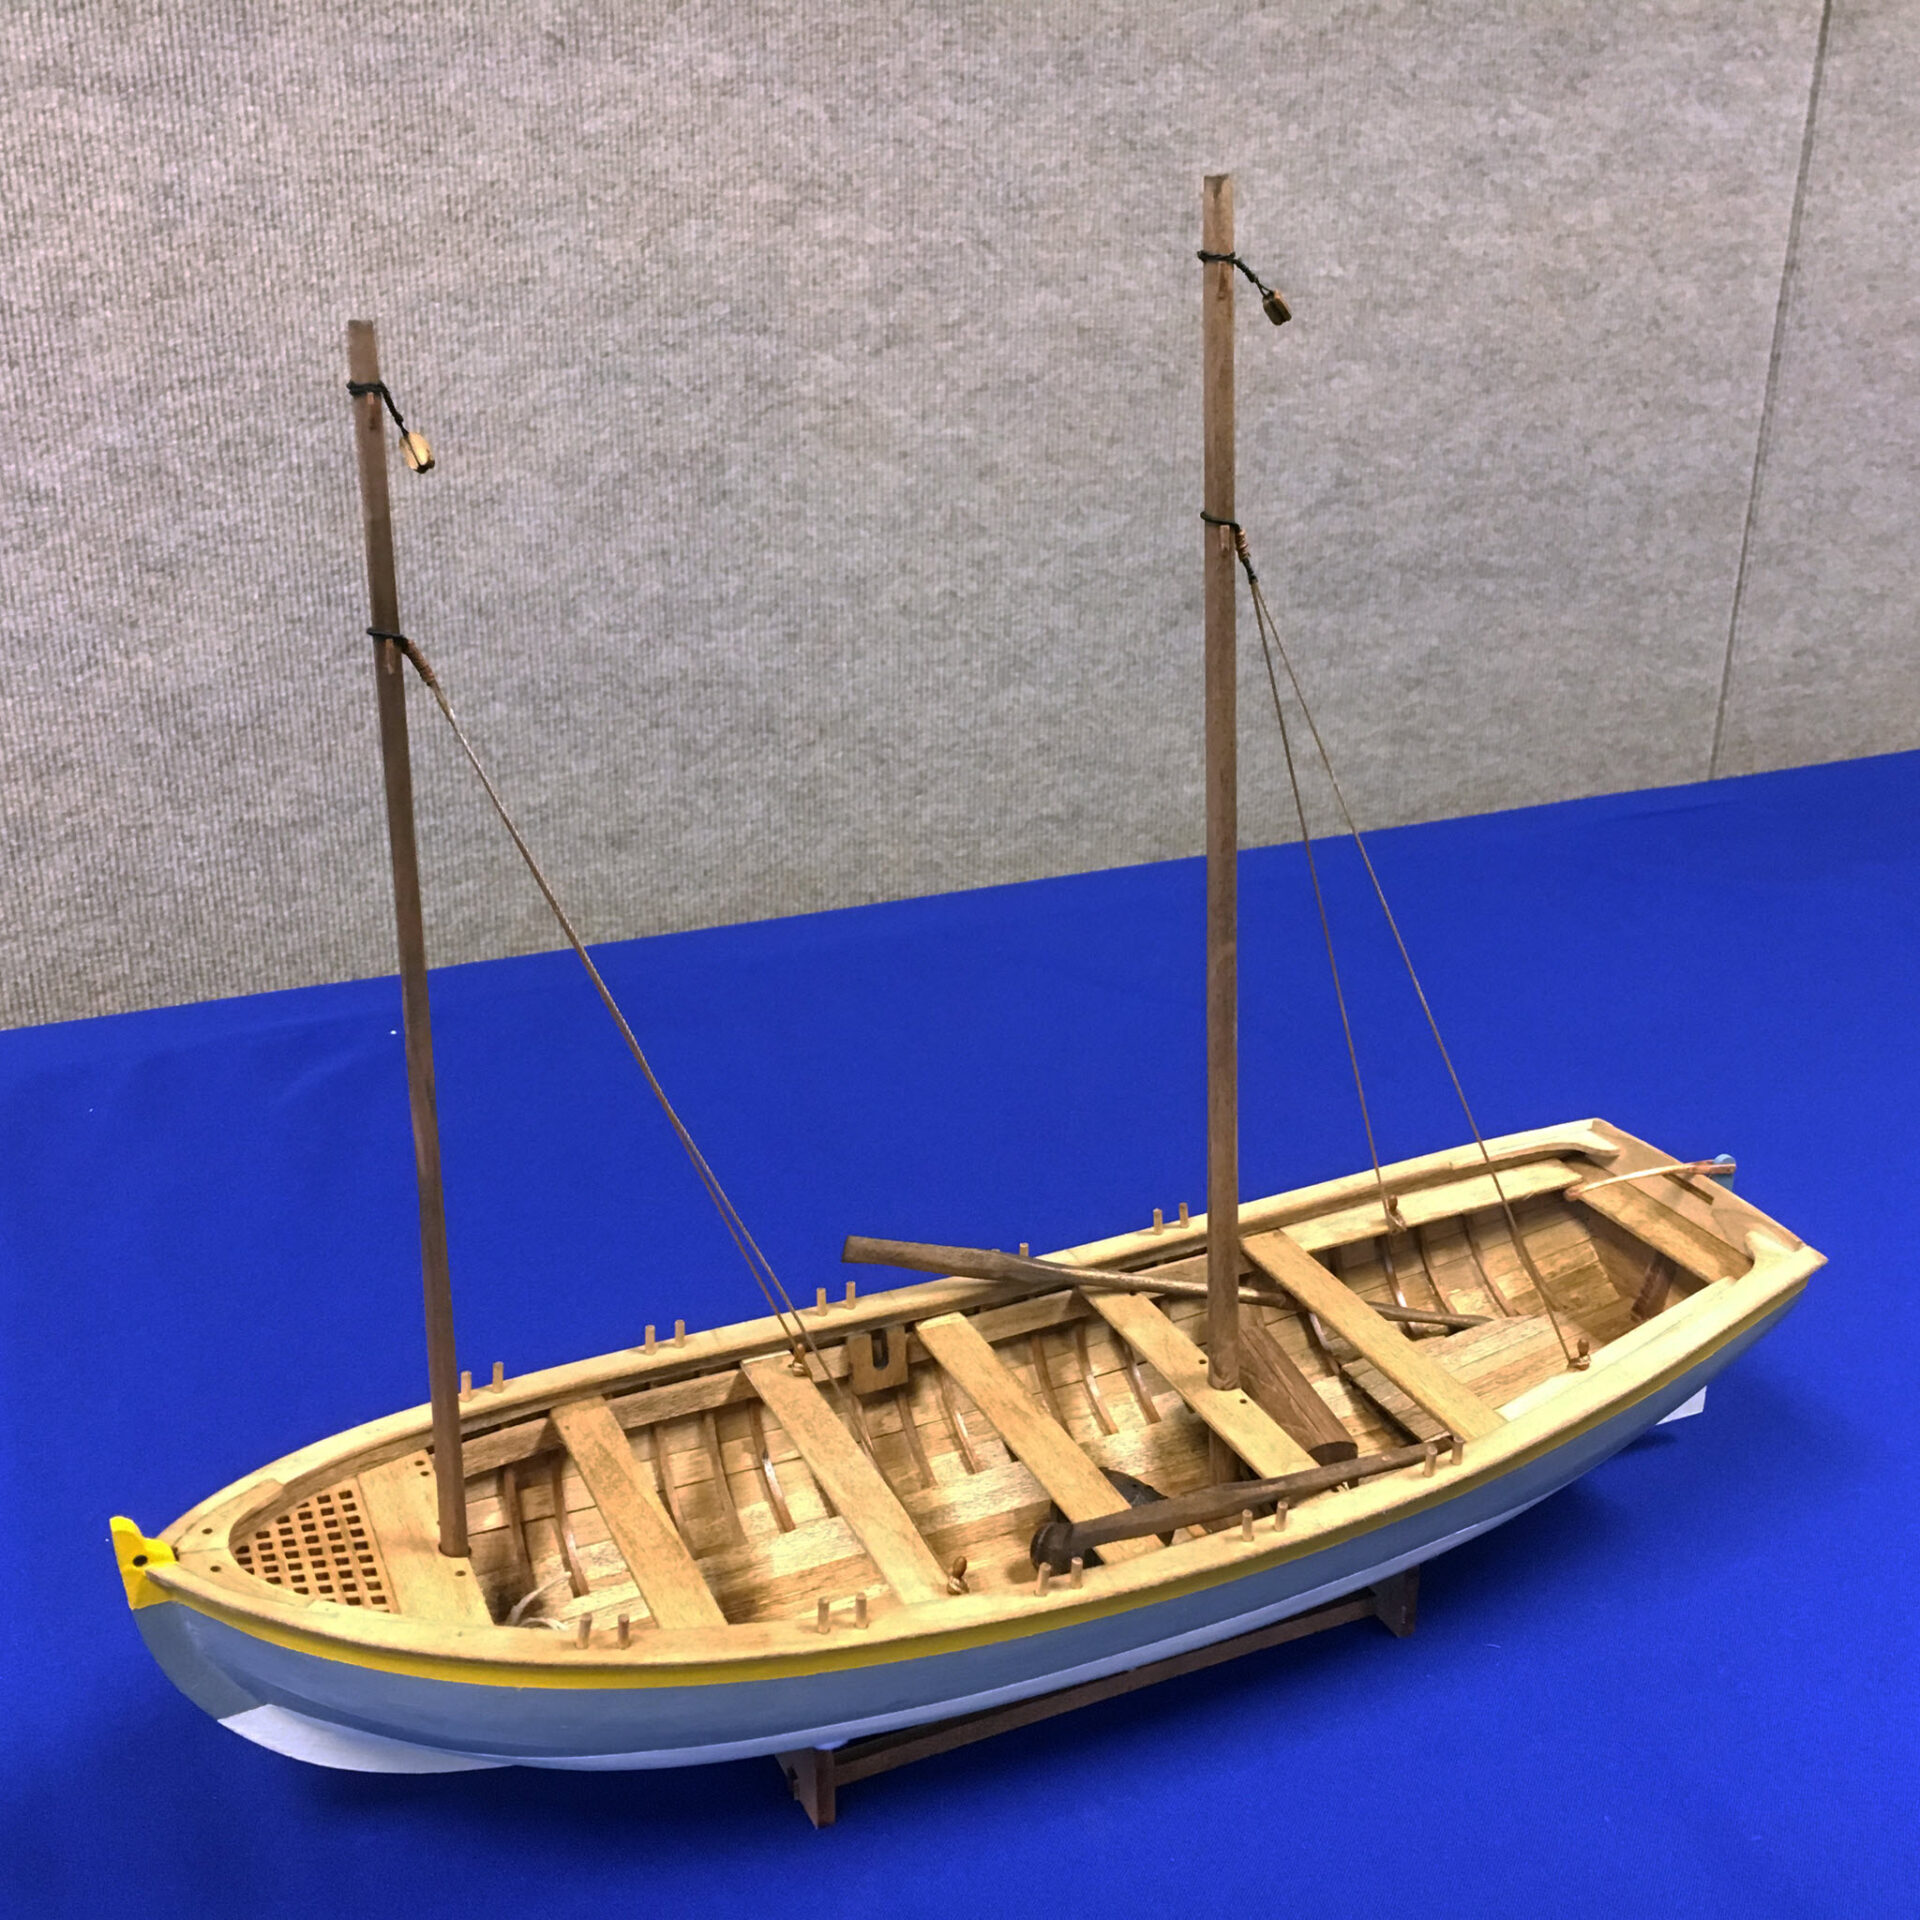 Model of HMS Bounty's Launch - Port side